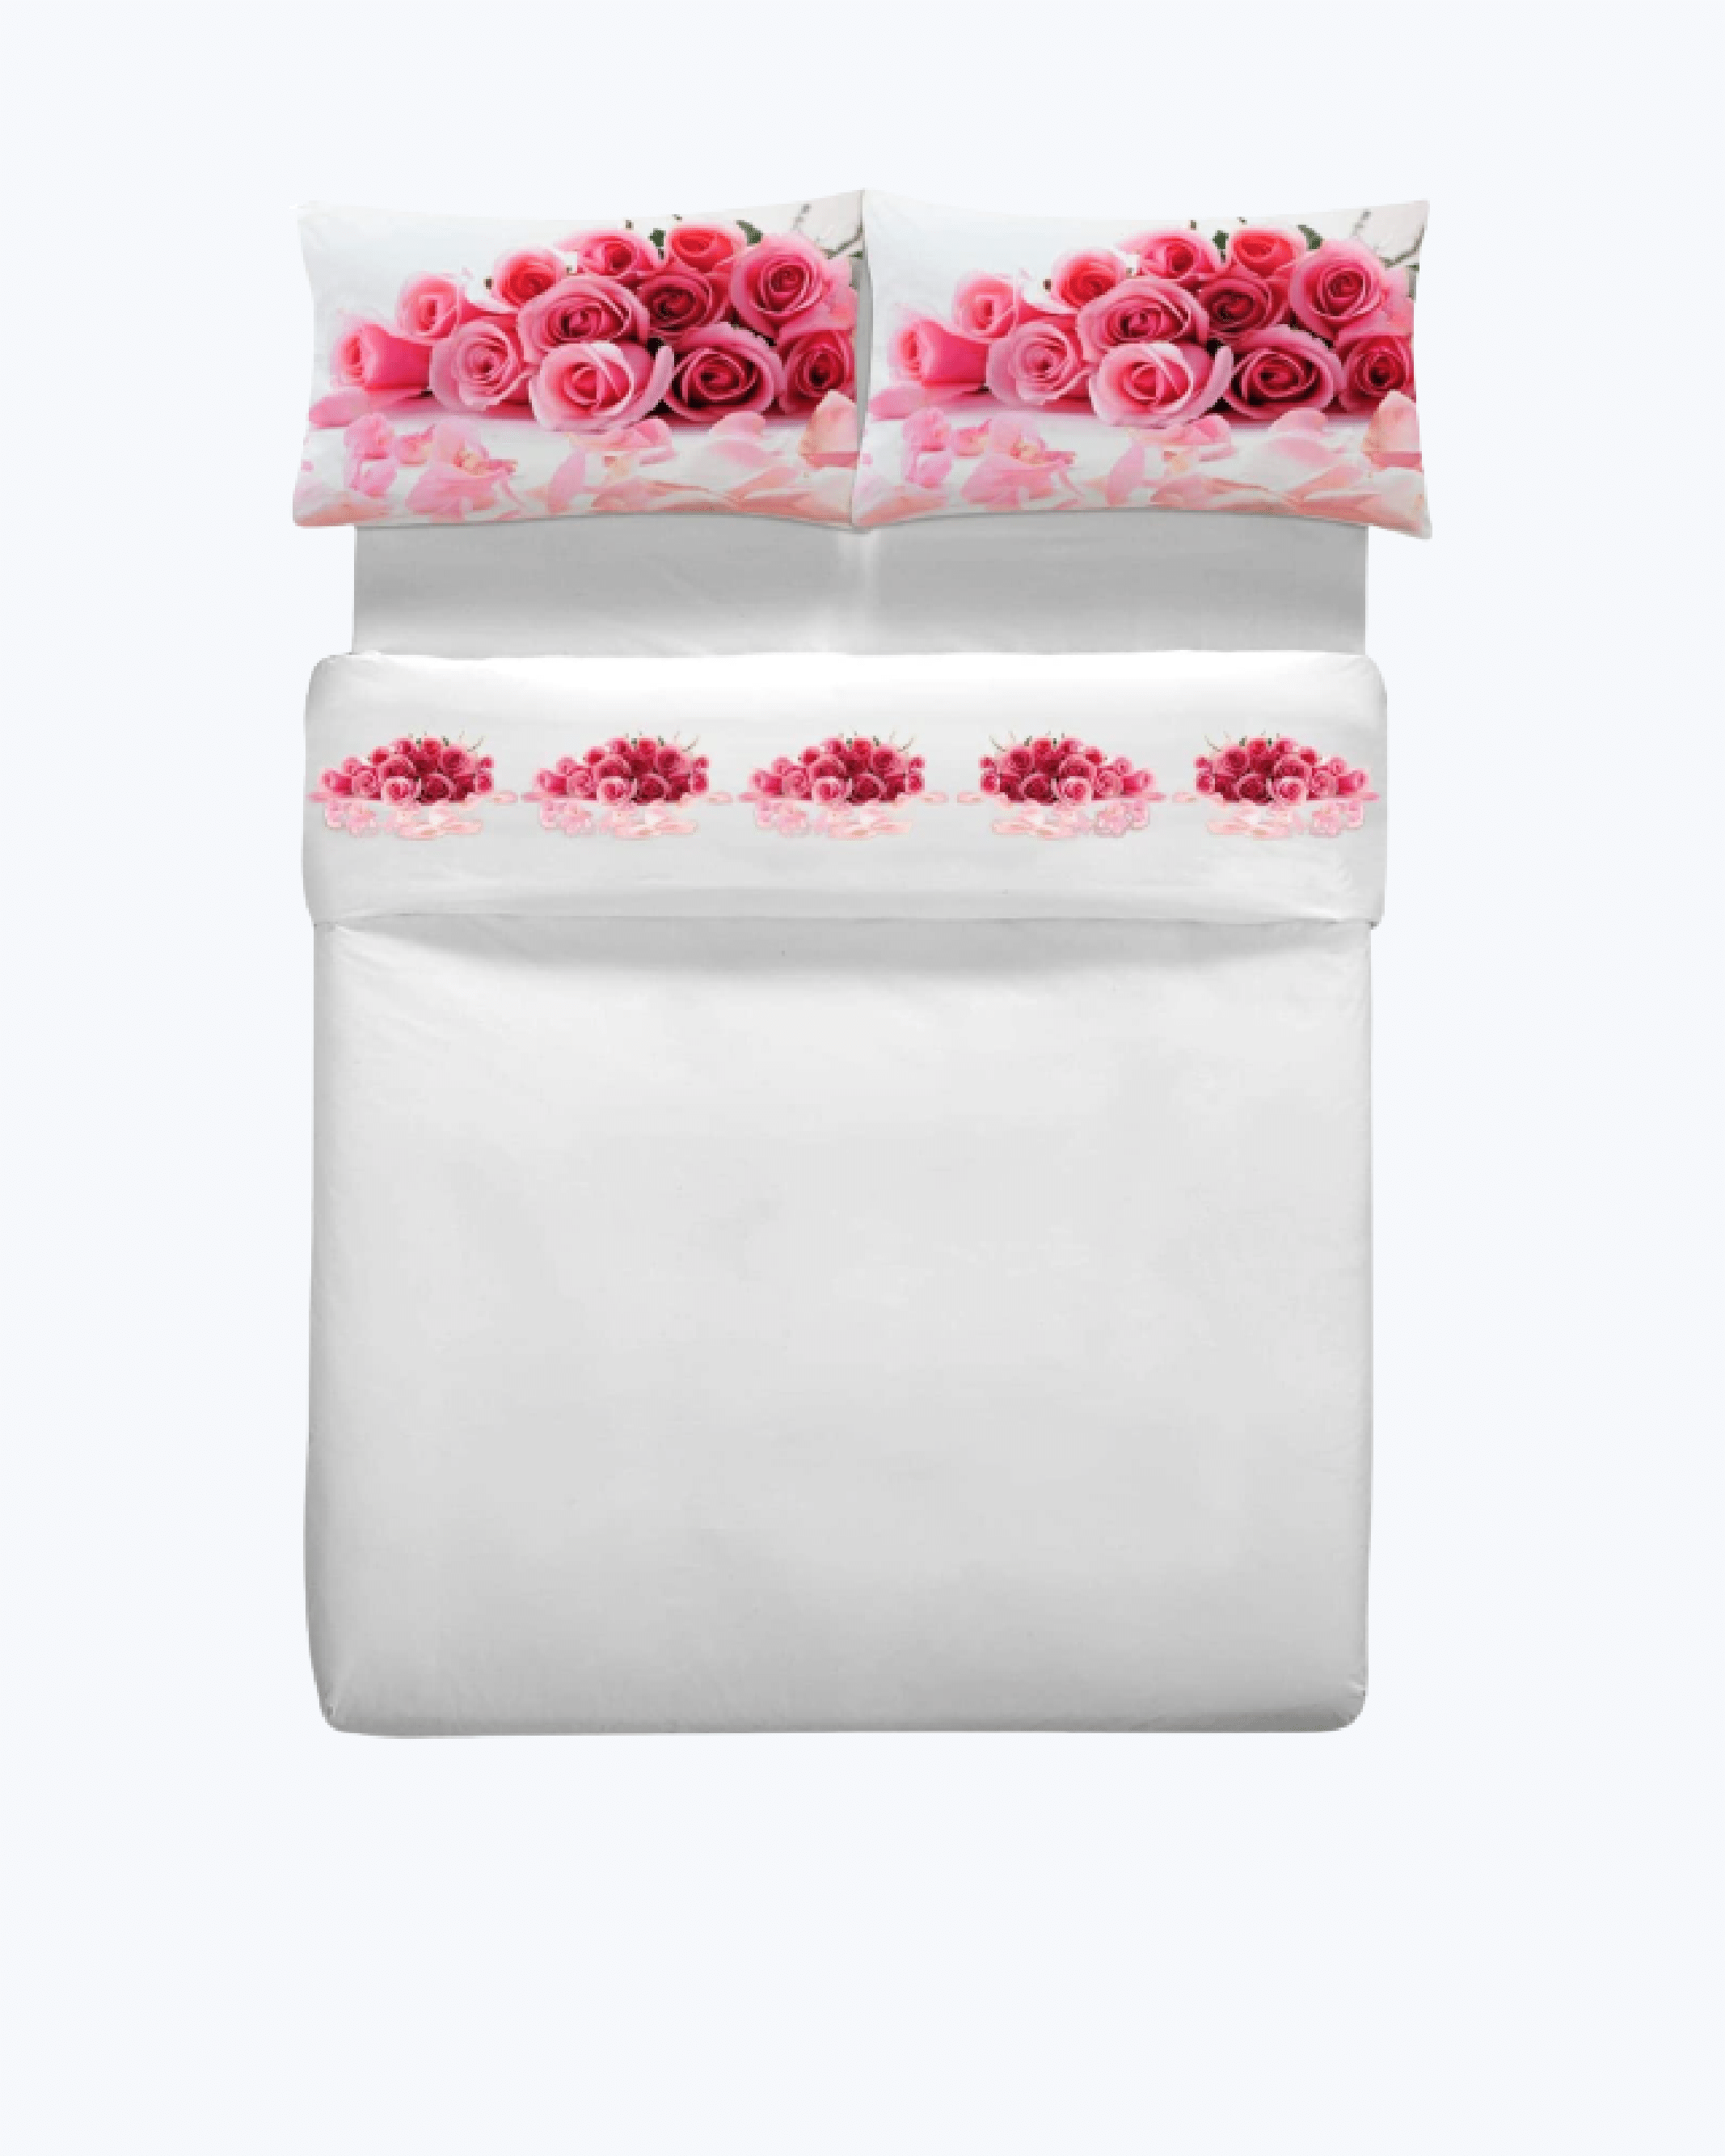 Set Lenzuola in Cotone con Rose - Completo Letto Elegante Bianco + Stampa Rosa